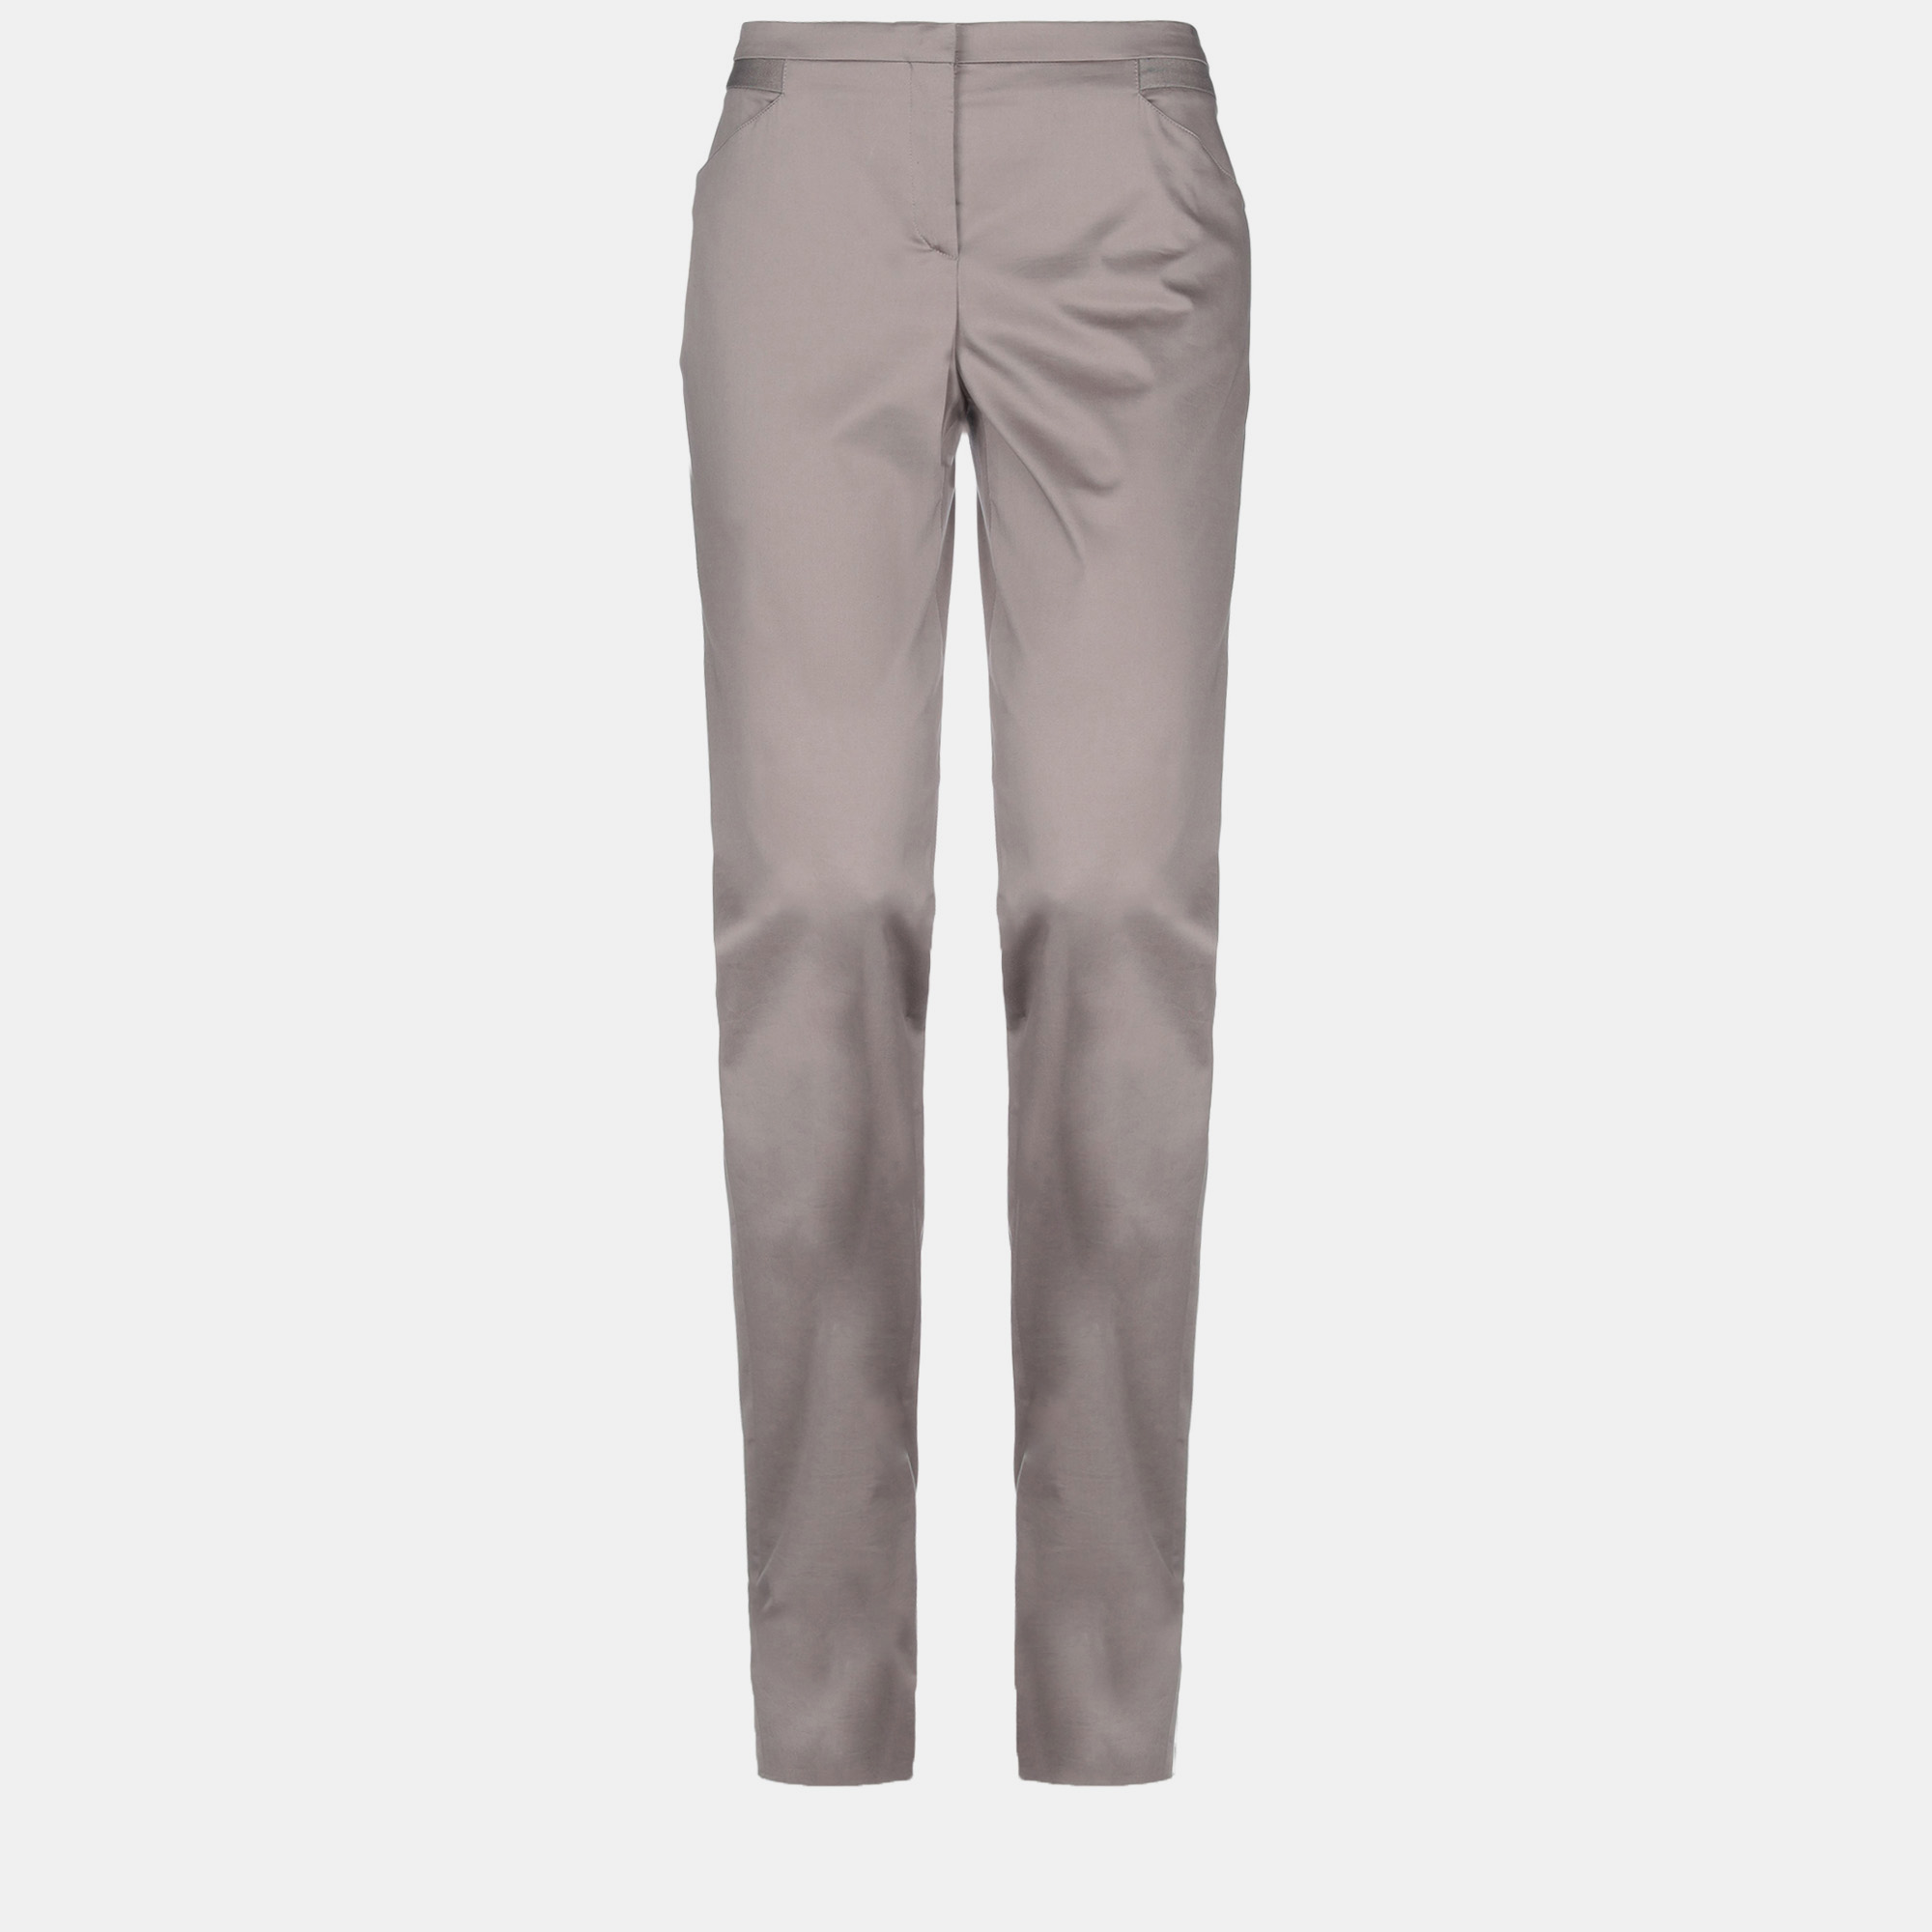 Giorgio armani grey cotton trousers size 50